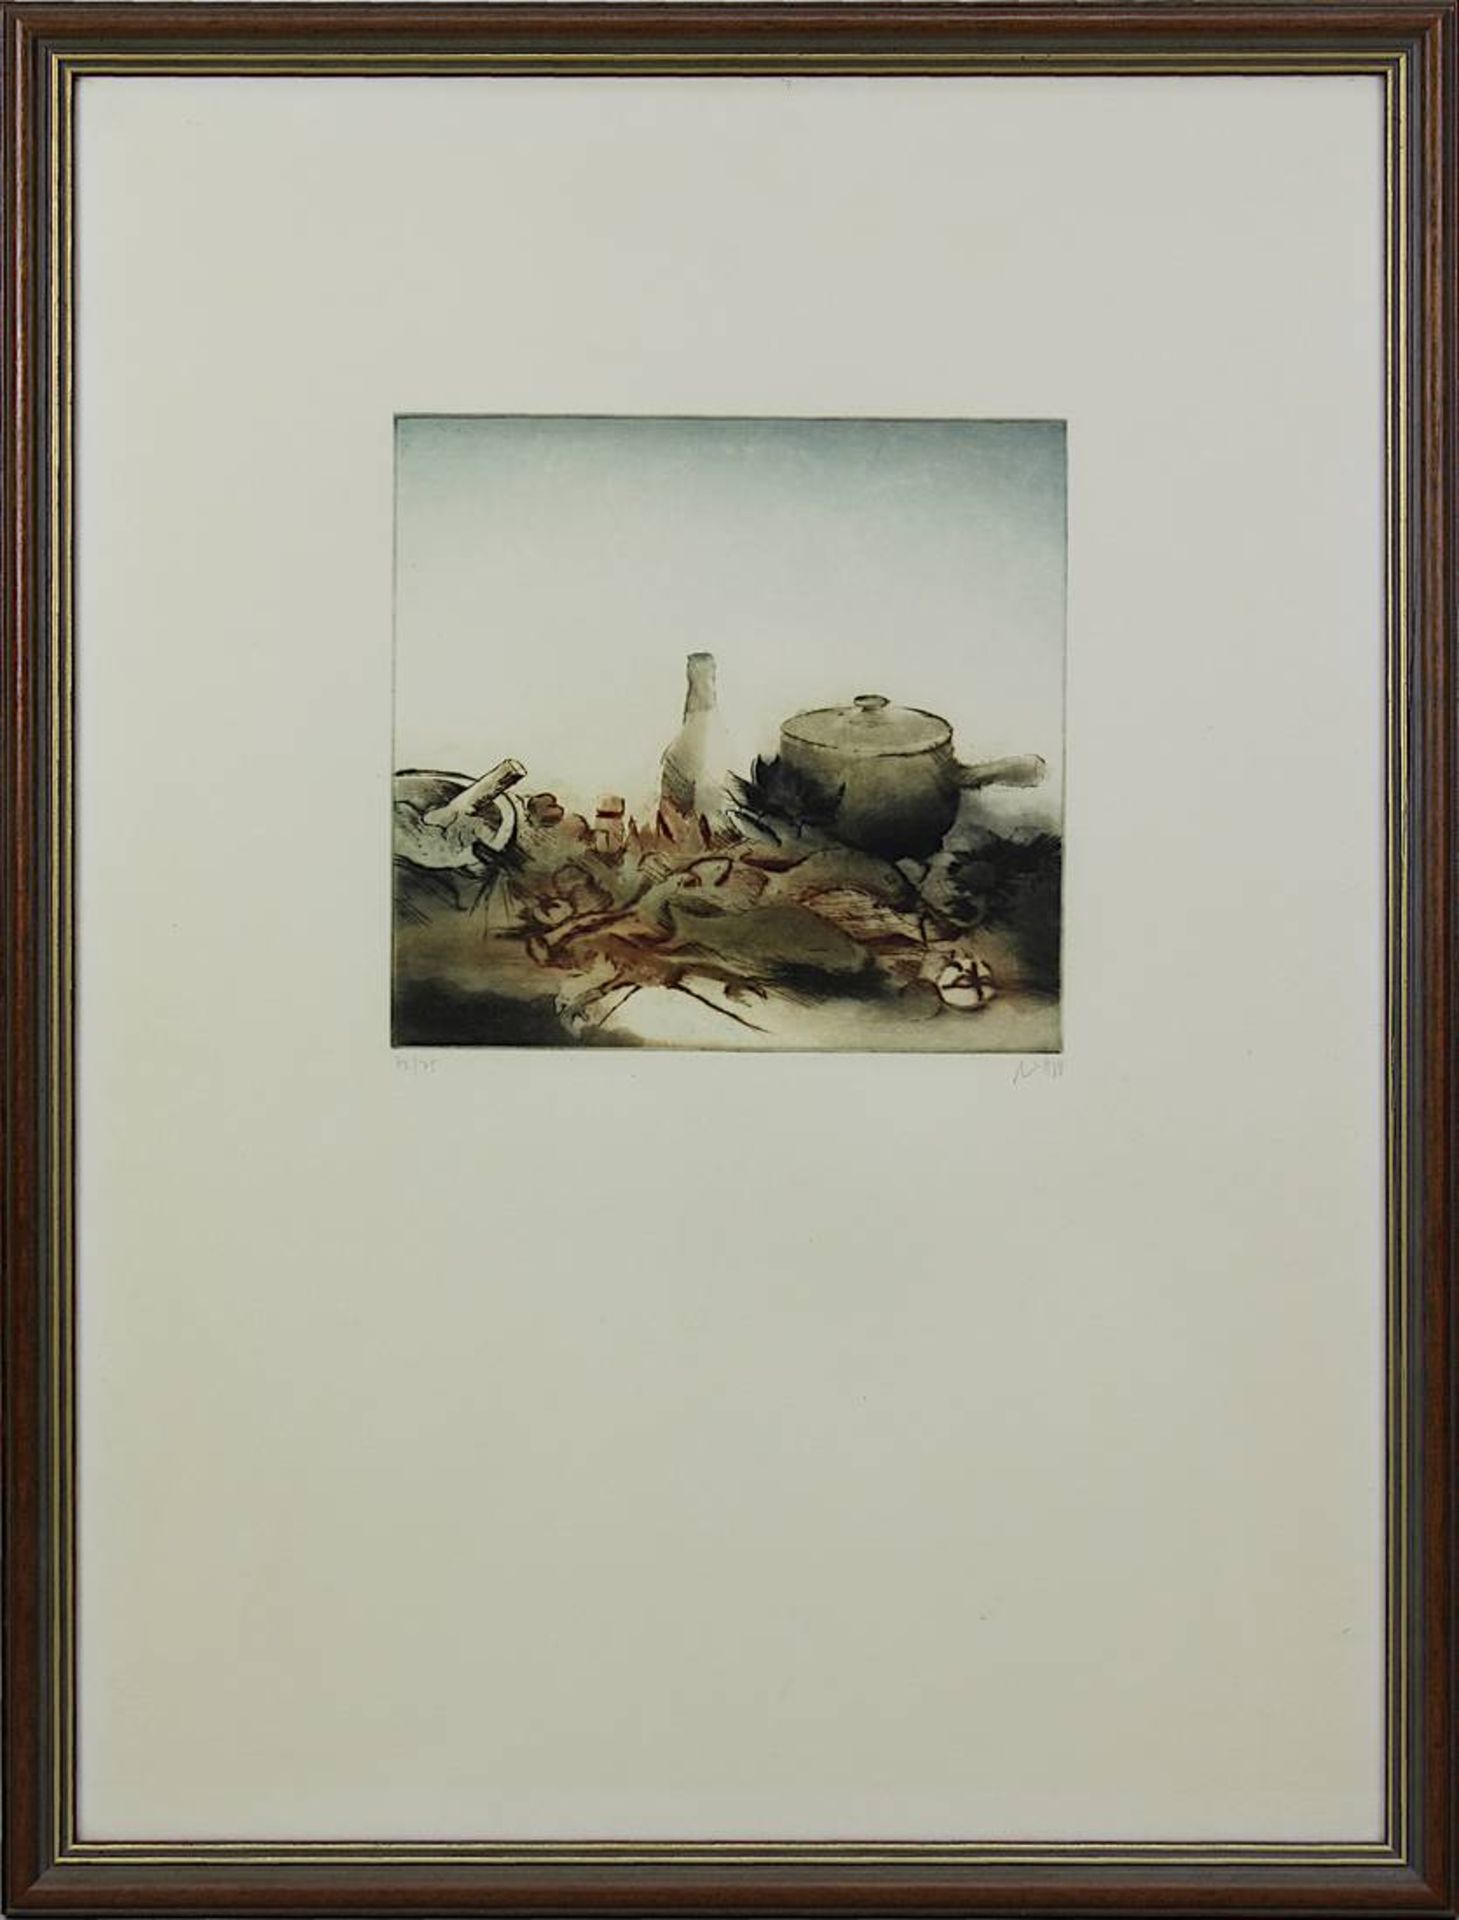 Lichtner-Aix, Werner (Berlin 1939 - 1987 München) Zwei Farbradierungen: Fisch, 18,5 x 20 cm, am - Image 4 of 5